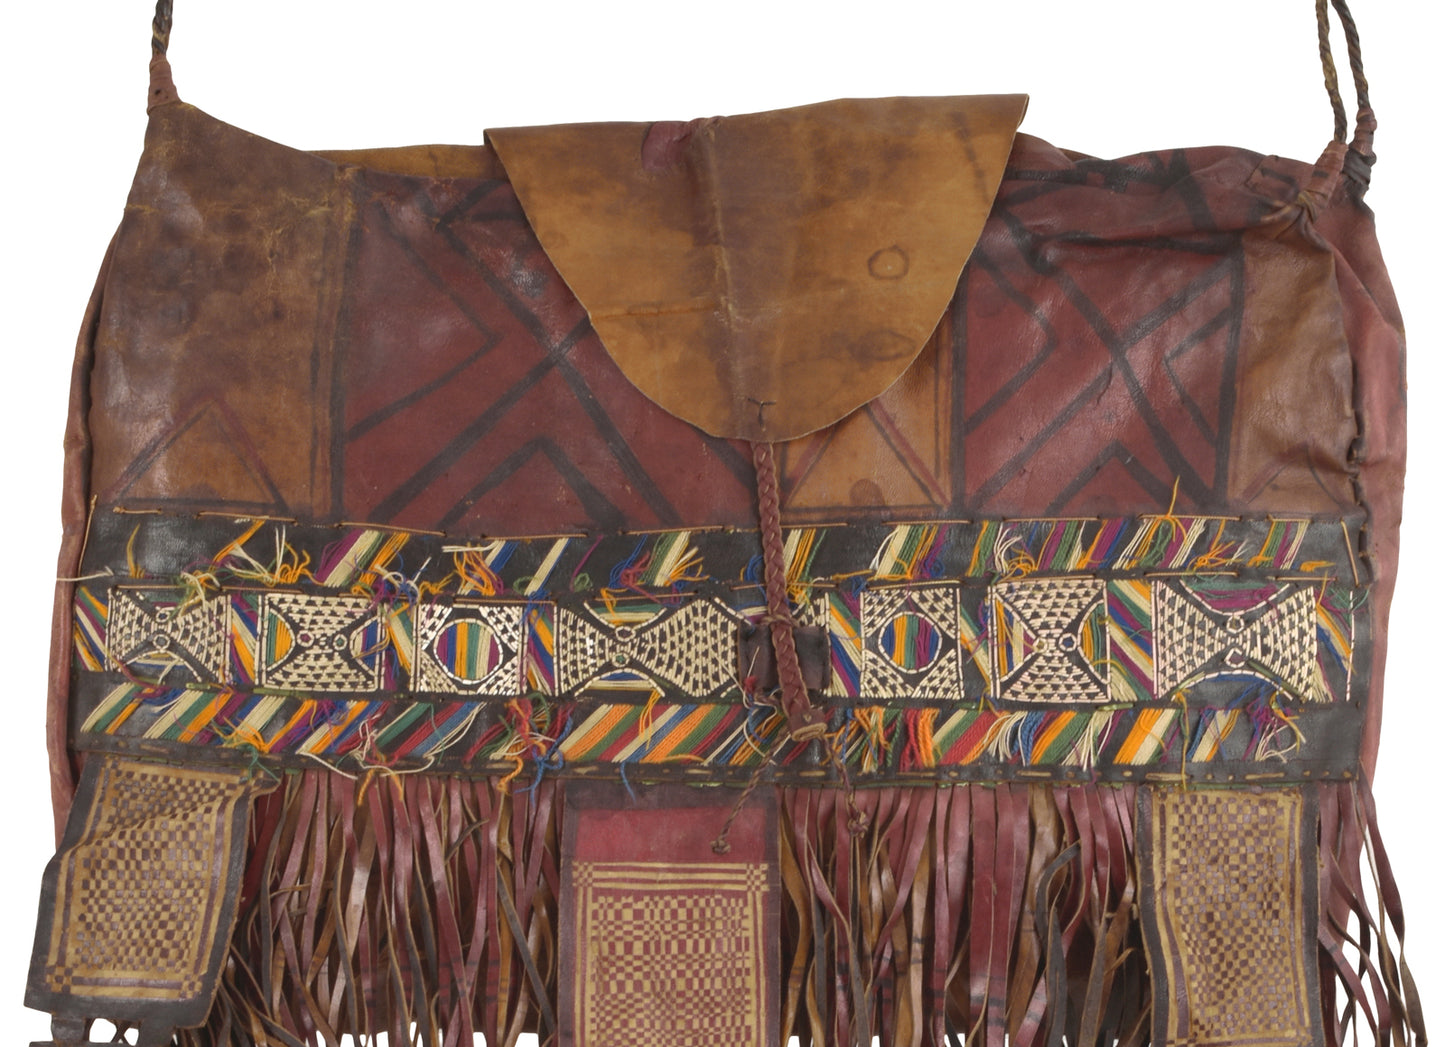 Старая африканская сумка для лошади из кожи туарегов на верблюде из Нигера Peul Fulani Sahara art - Tribalgh